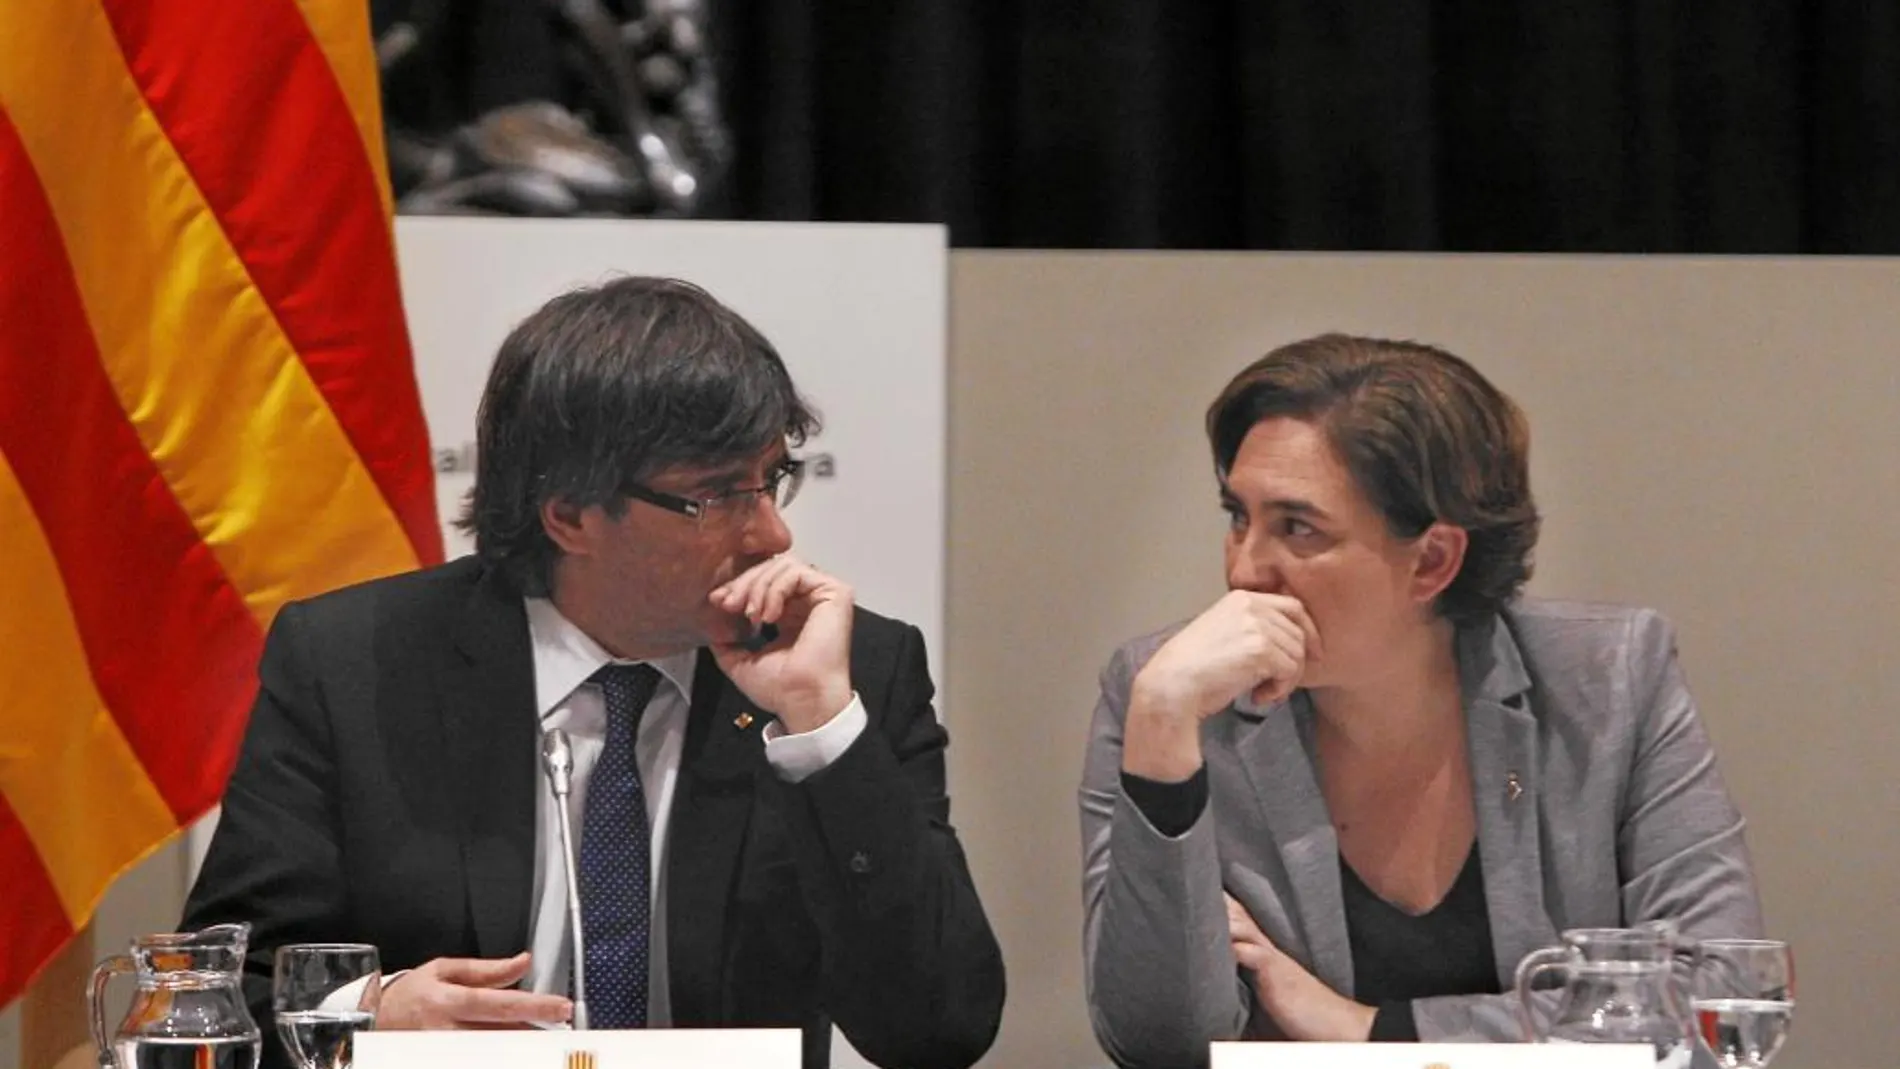 Puigdemont y Colau representarían las dos caras de una moneda de repetirse los resultados de las elecciones generales en unoc comicios catalanes o municipales